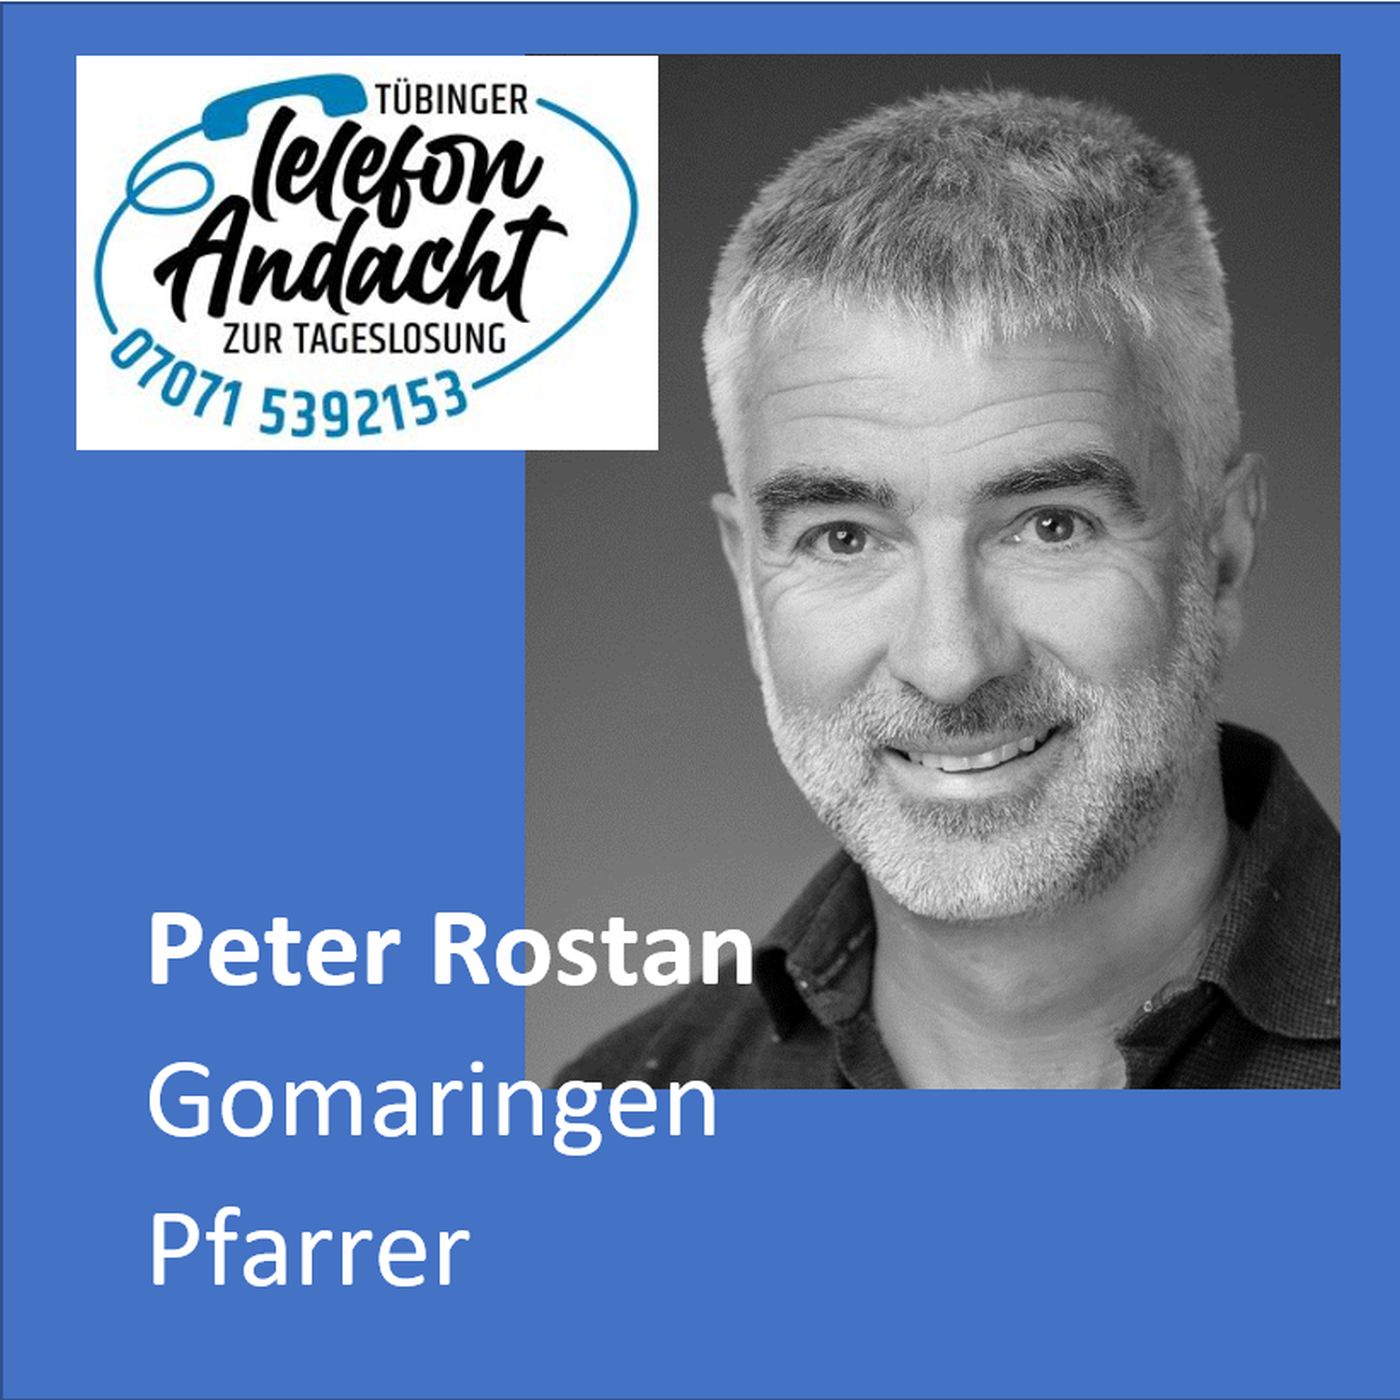 24 07 23 Peter Rostan